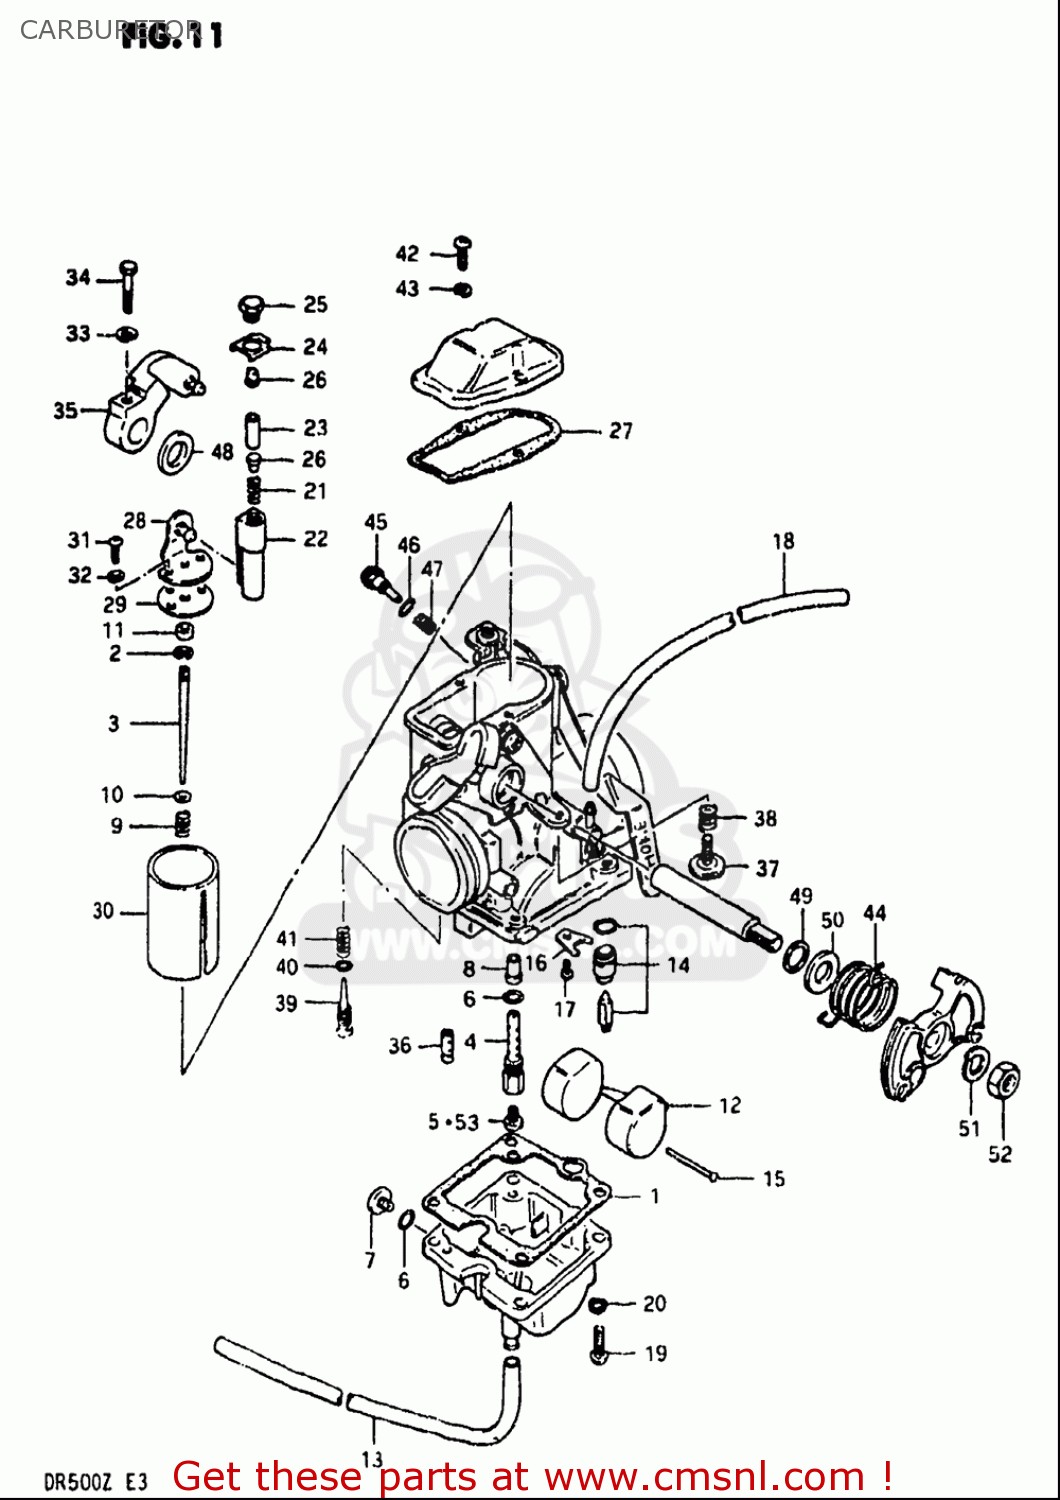 suzuki quadrunner 500 carburetor diagram